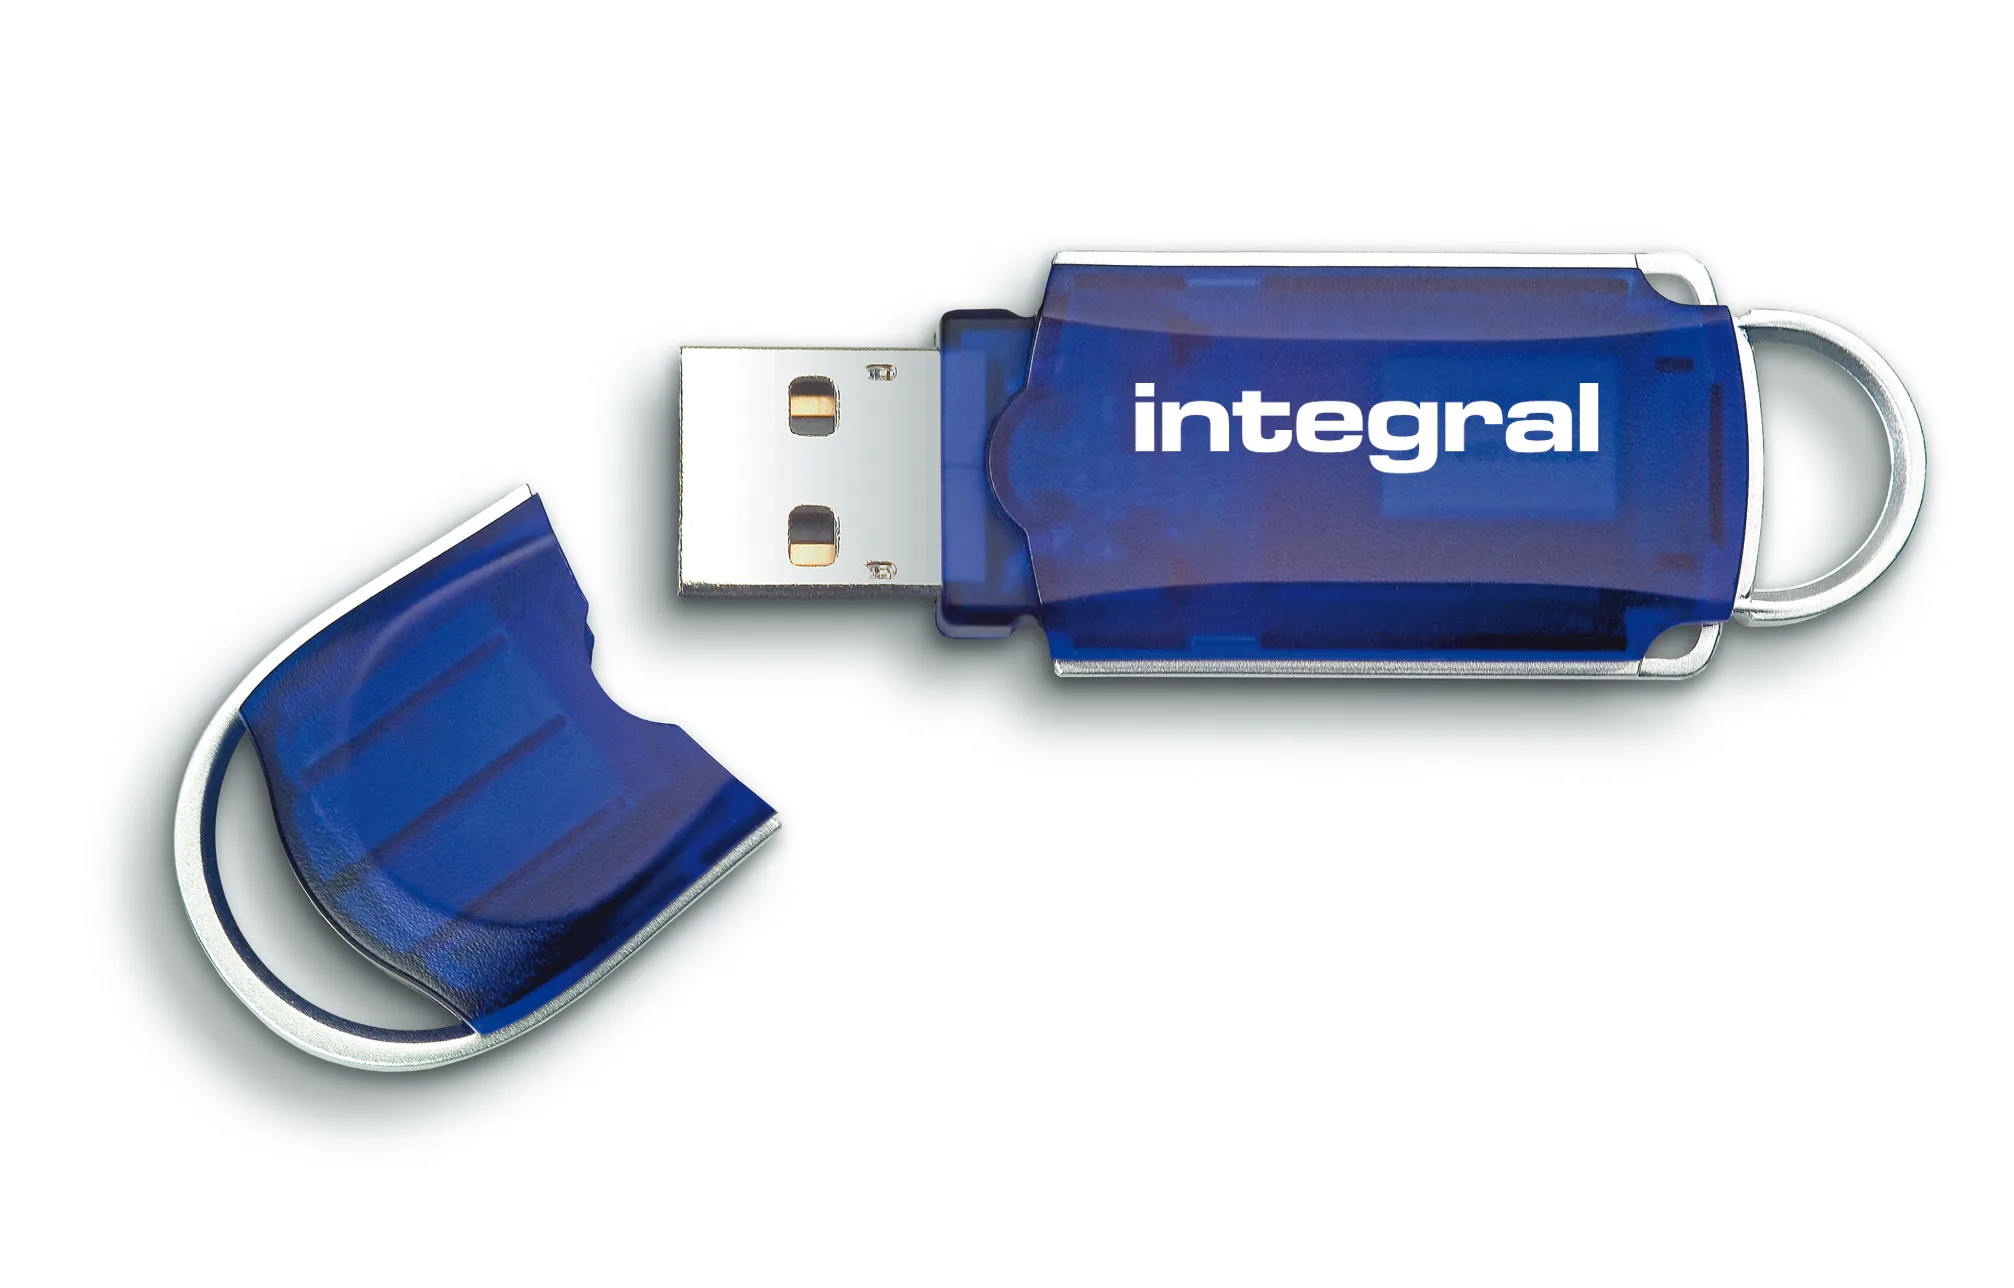 Vente Integral 64GB USB2.0 DRIVE COURIER BLUE INTEGRAL Integral au meilleur prix - visuel 2